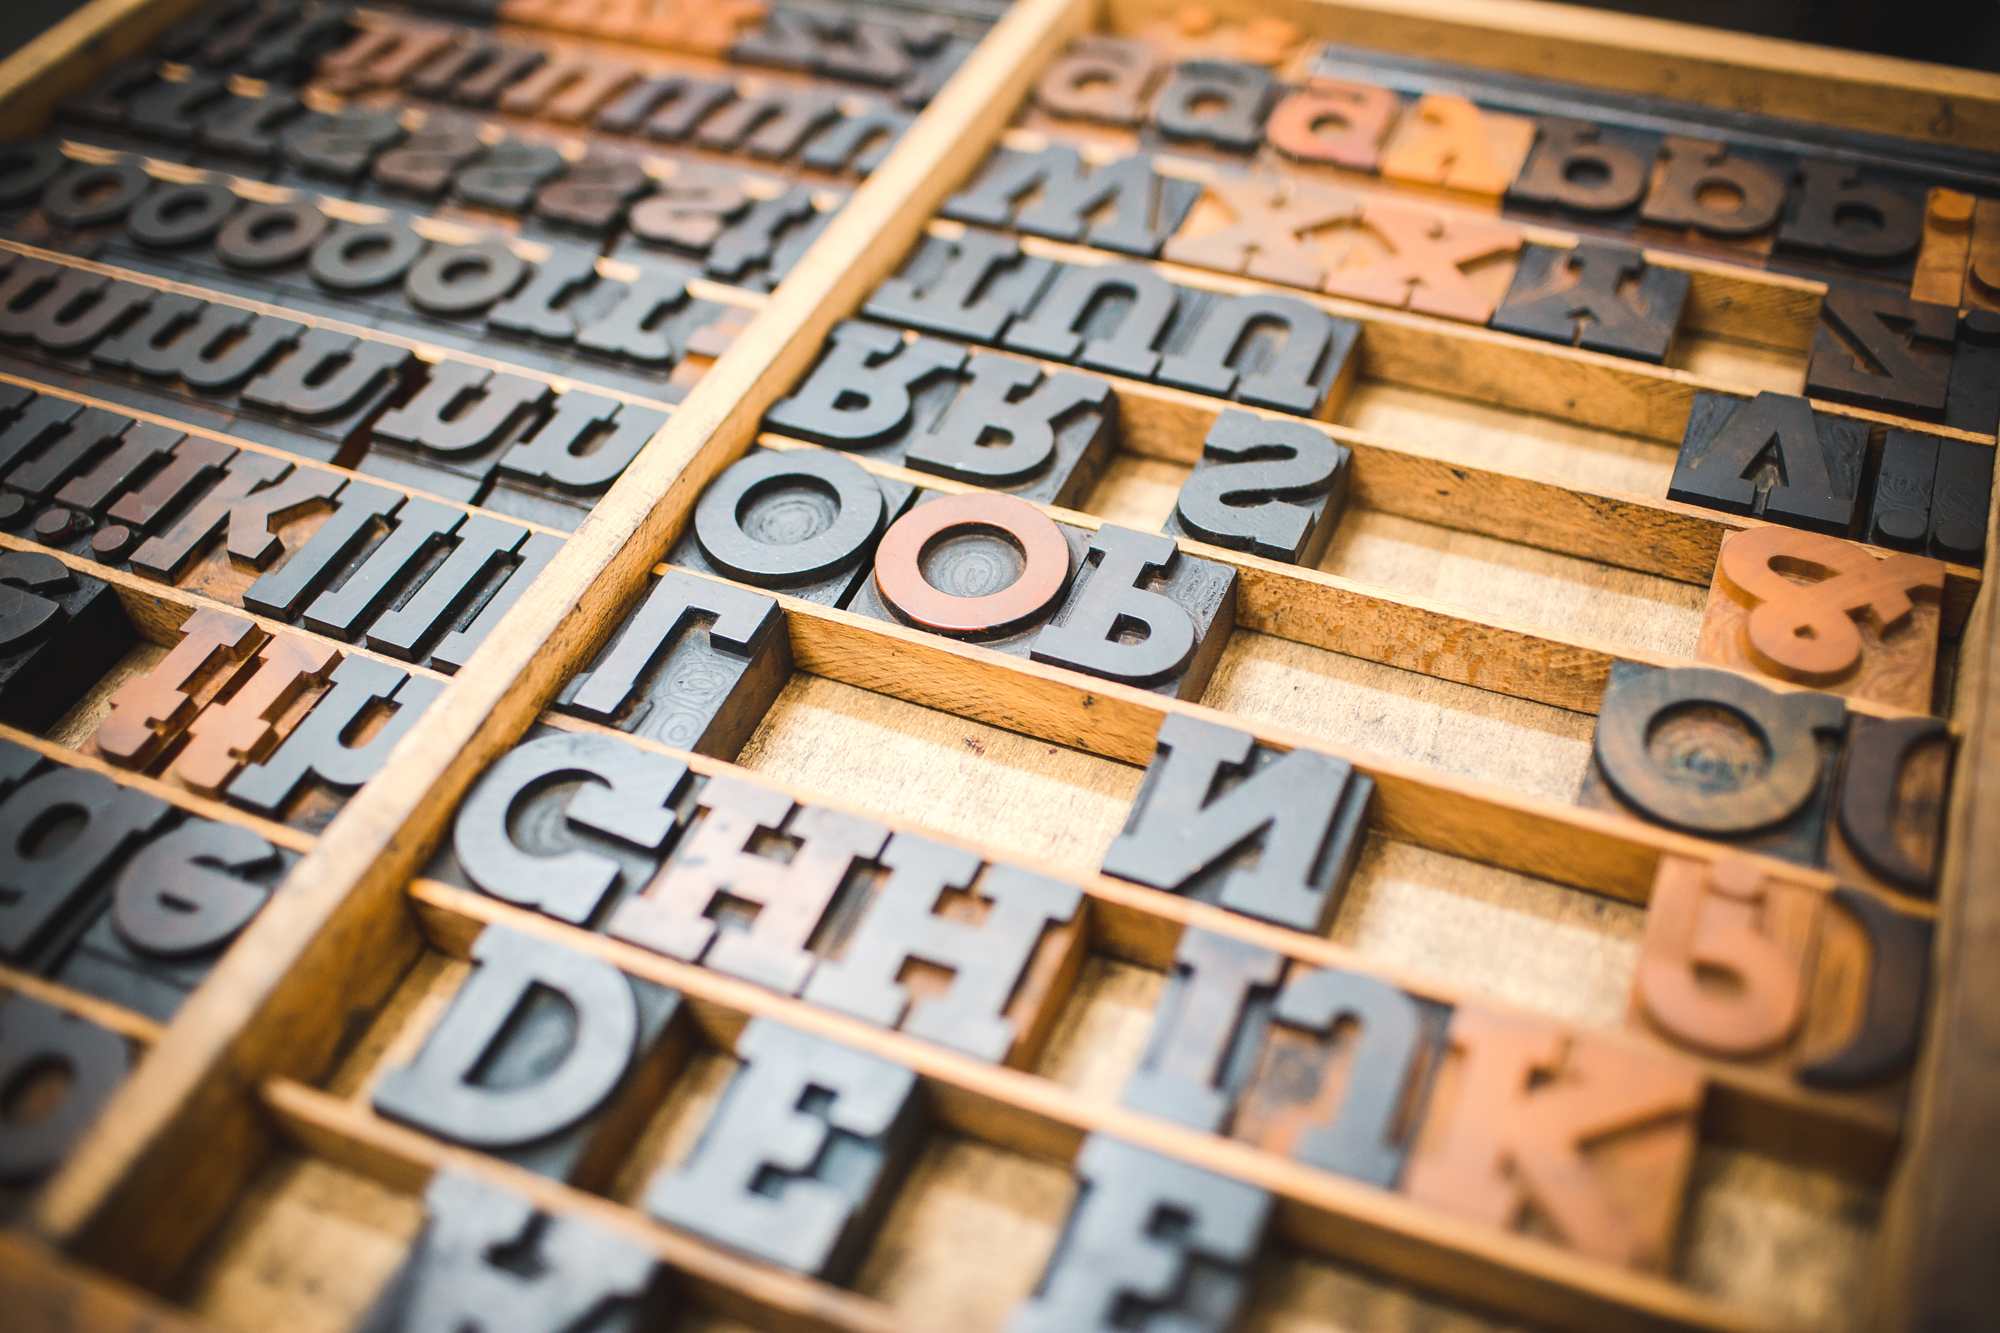 Photographie présentant des caractères d'imprimerie en bois utilisés dans le cadre de la typographie artisanale